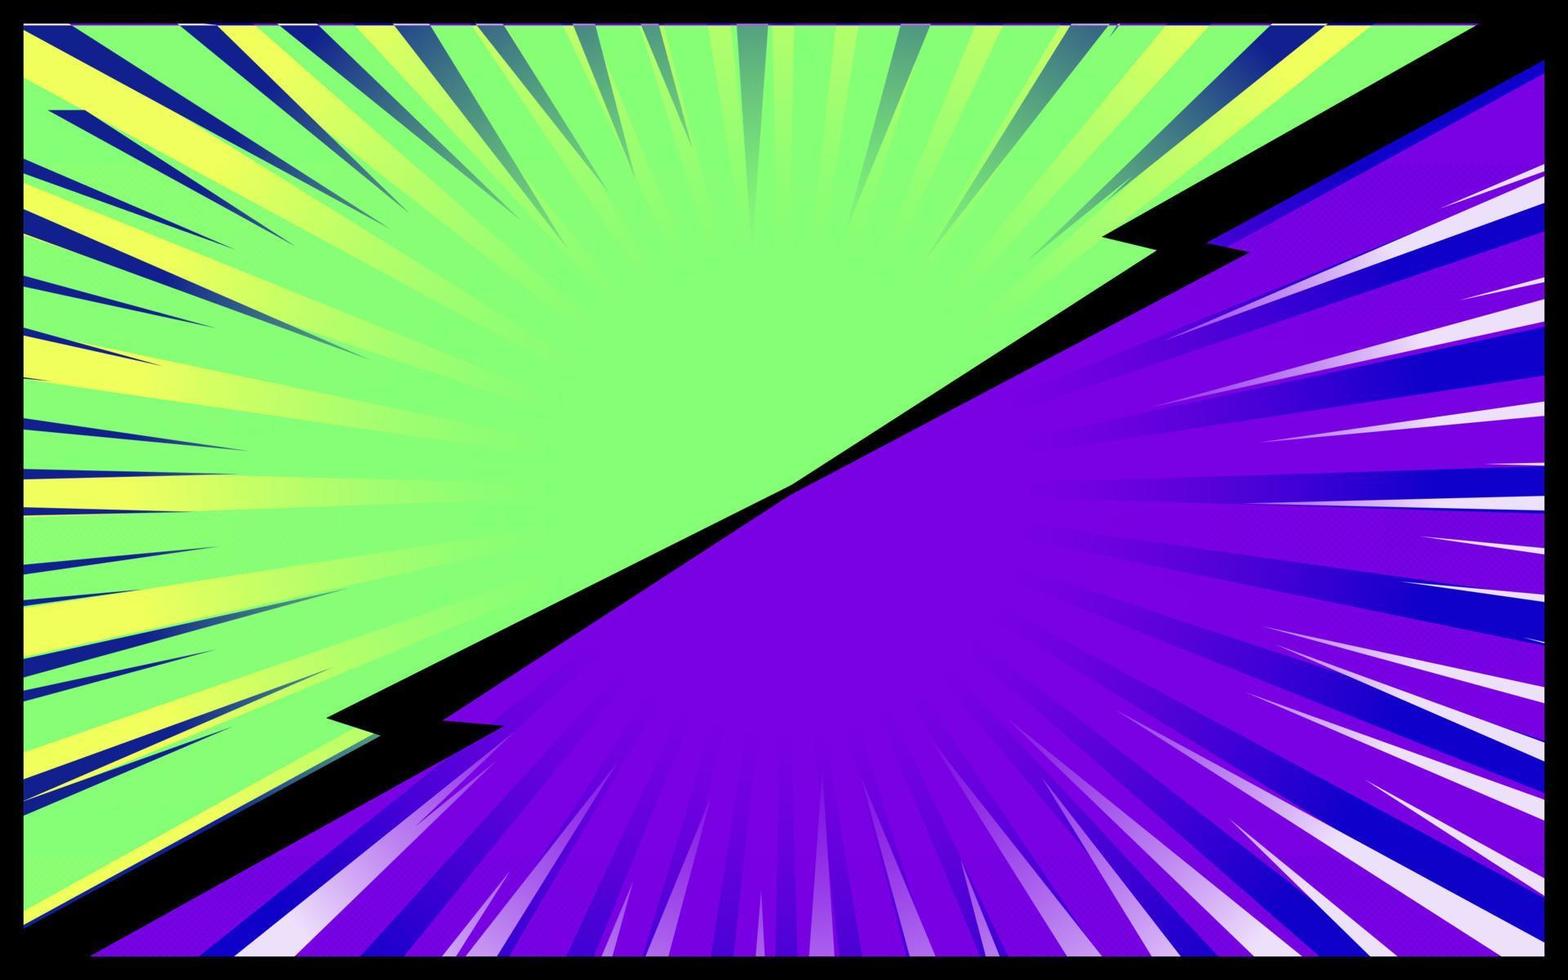 Retro-Vektor des grünen und purpurroten komischen Hintergrundes vektor